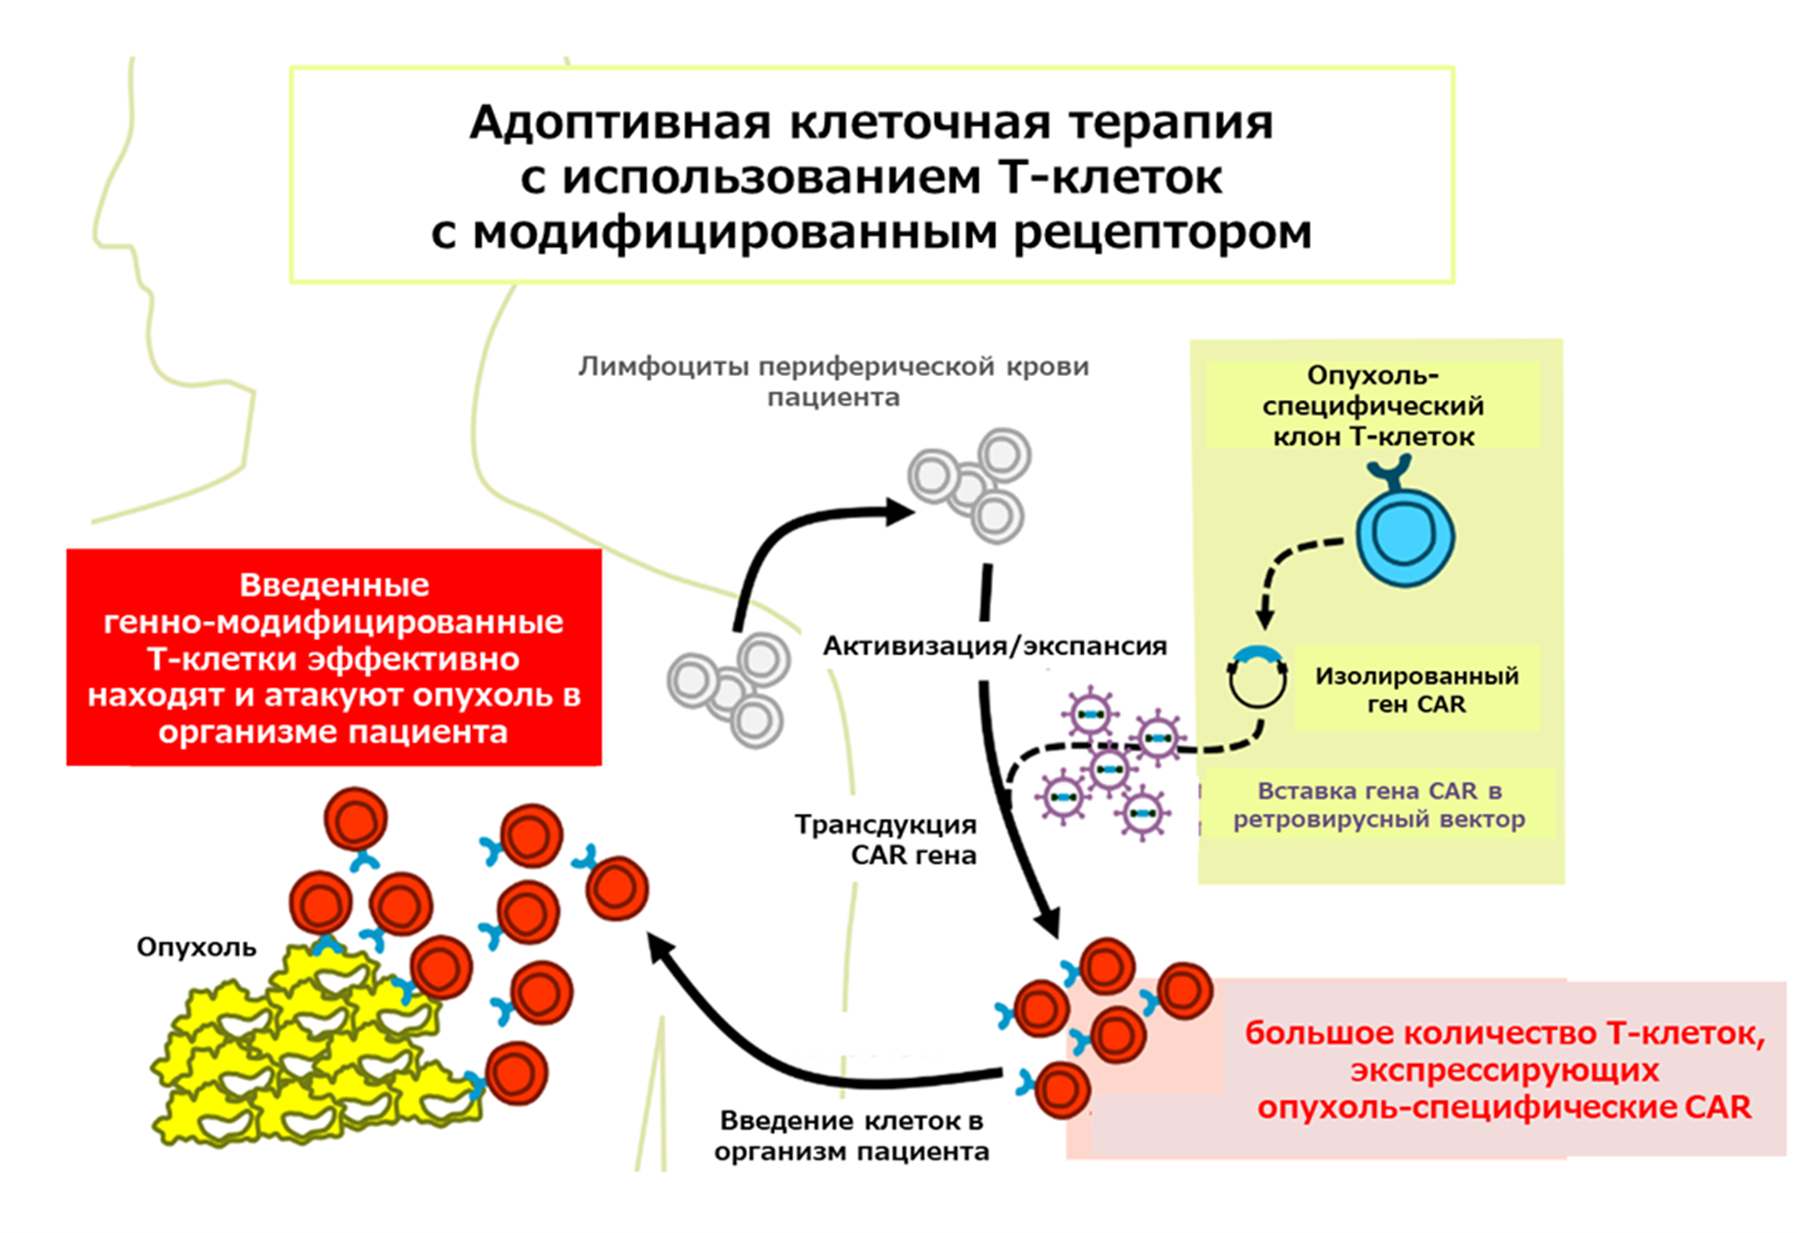 Общая схема иммунотерапии модифицированными лимфоцитами